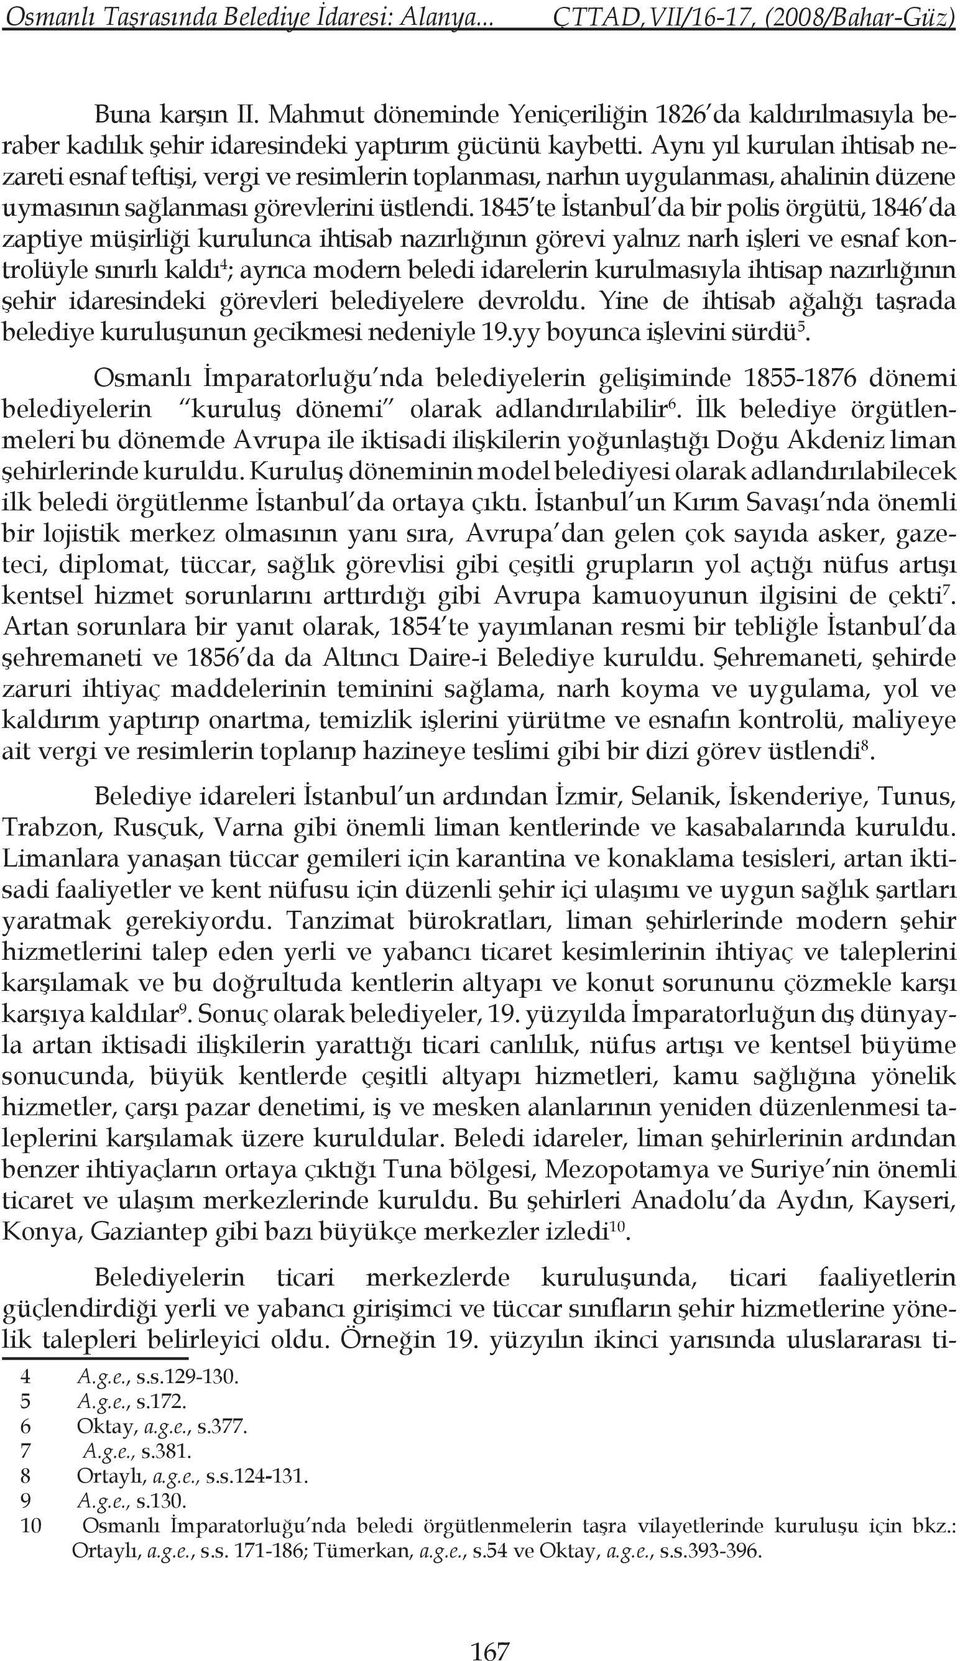 1845 te İstanbul da bir polis örgütü, 1846 da zaptiye müşirliği kurulunca ihtisab nazırlığının görevi yalnız narh işleri ve esnaf kontrolüyle sınırlı kaldı 4 ; ayrıca modern beledi idarelerin